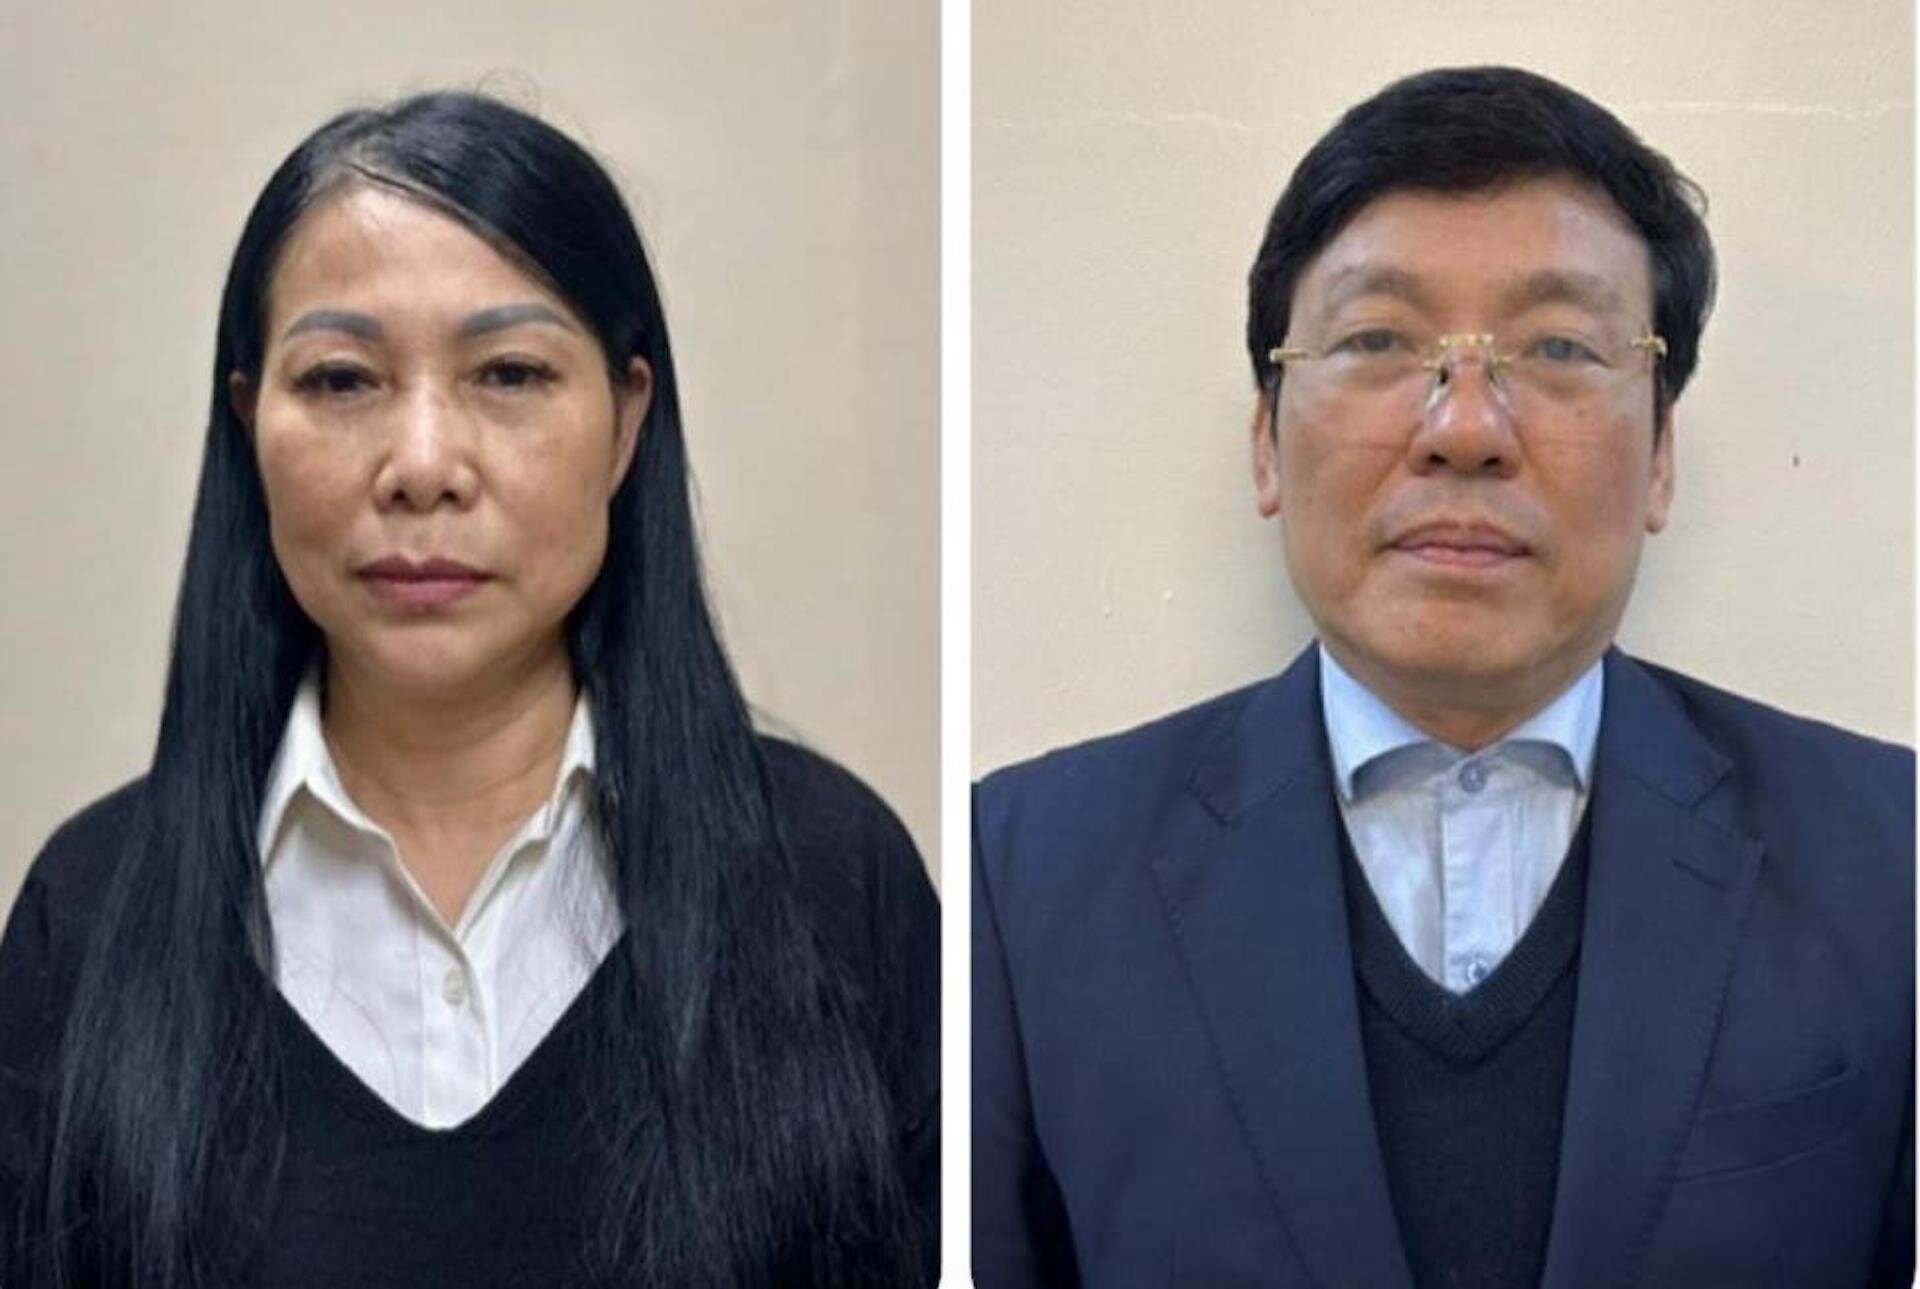 Bà Hoàng Thị Thúy Lan (Bí thư Tỉnh ủy Vĩnh Phúc) và ông Lê Duy Thành (Chủ tịch UBND tỉnh Vĩnh Phúc) bị bắt về tội Nhận hối lộ.